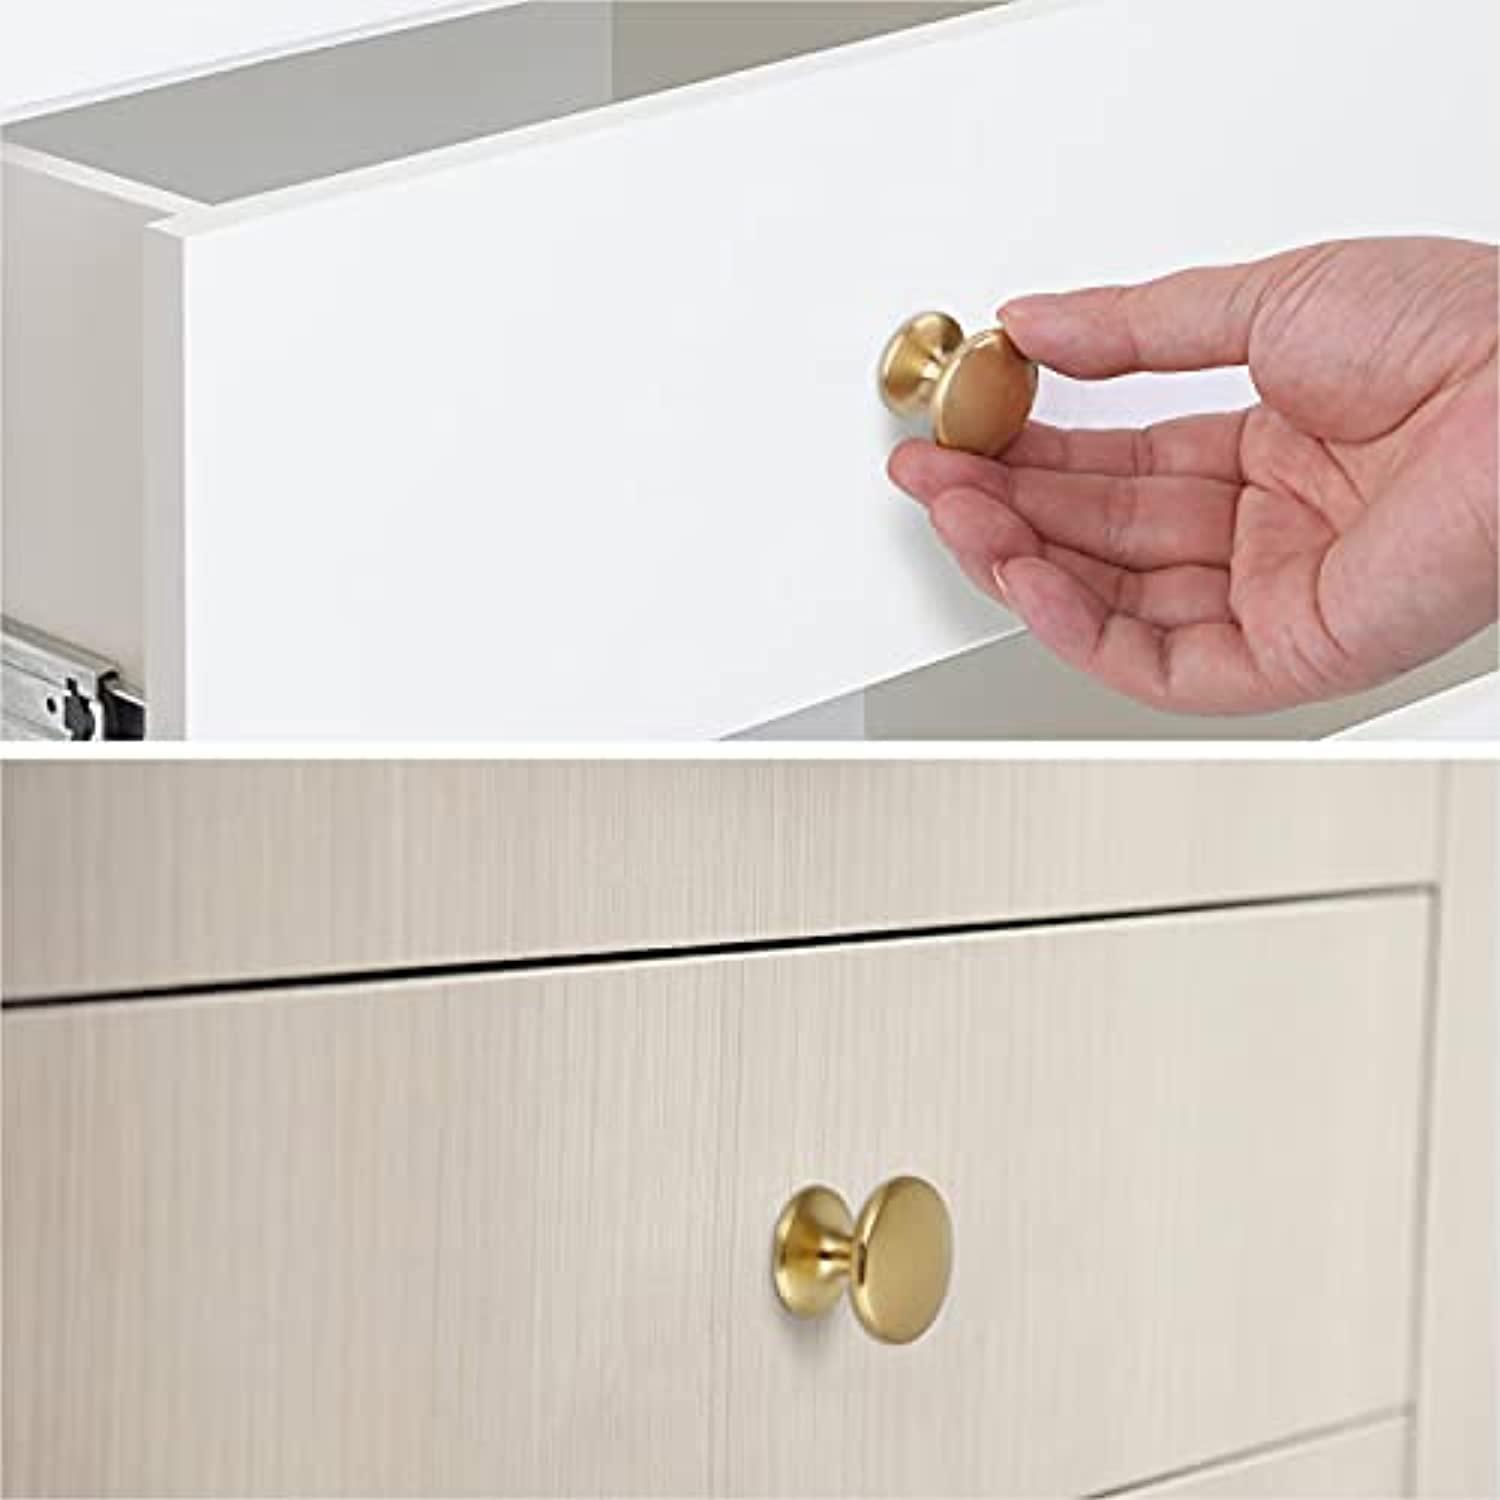 biglufu 1 inch drawer knobs, 6-pack brass kitchen cabinet knobs, 27mm diameter dresser knobs drawer pulls, door knobs dresser